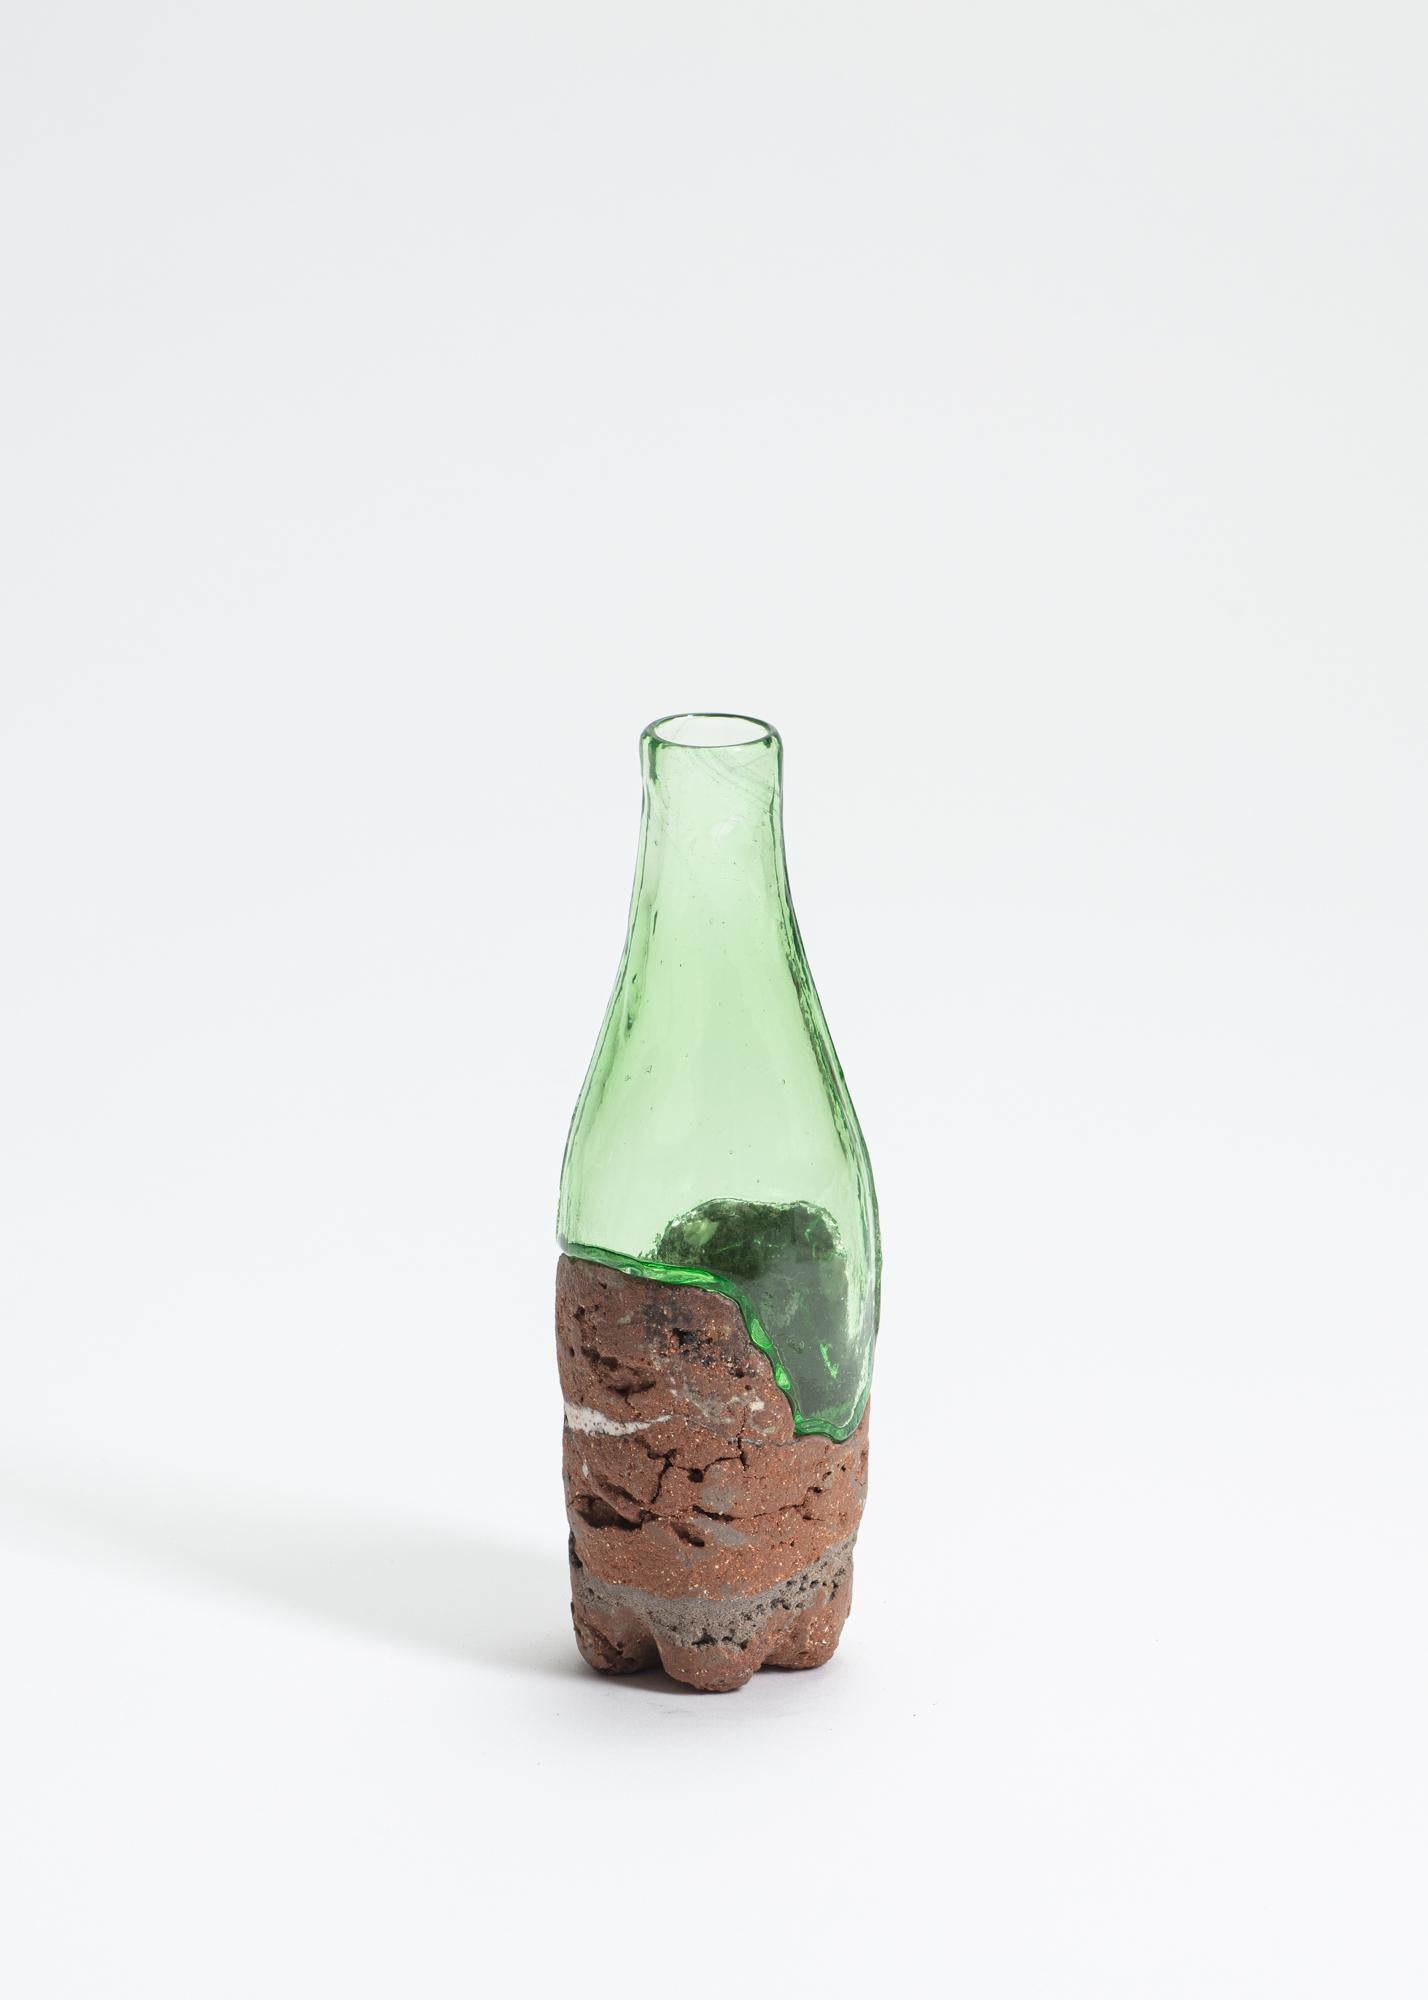 FUWA FUWA, Nr. 3 Flasche von Yusuke' Y. Offhause
Das Werk ist ein Unikat und besteht aus zwei Teilen (Keramik und Glas).
Abmessungen: T 6,5 x B 6,5 x H 20 cm.
MATERIALIEN: Steingut, Porzellan, Glas.

Yusuke' Y. Offhause:
